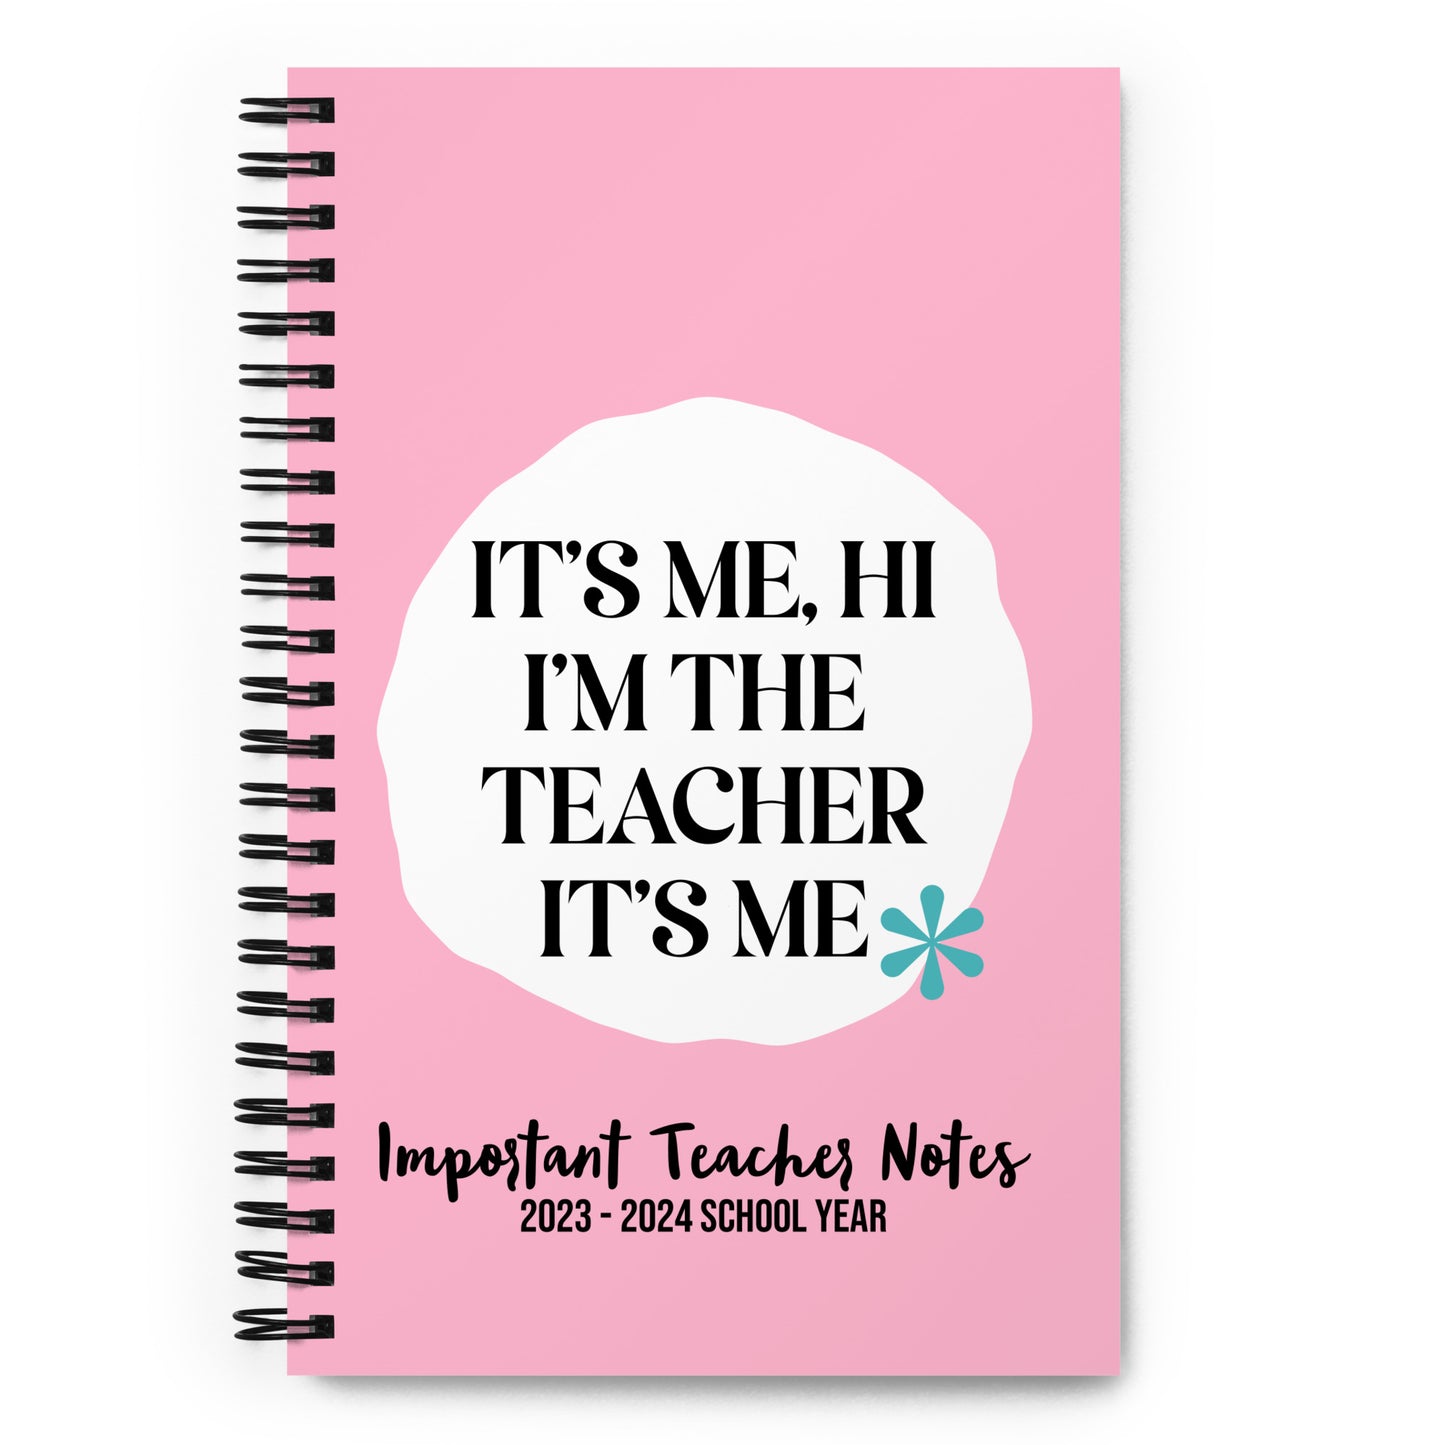 I'm the Teacher It's Me Spiral Notebook